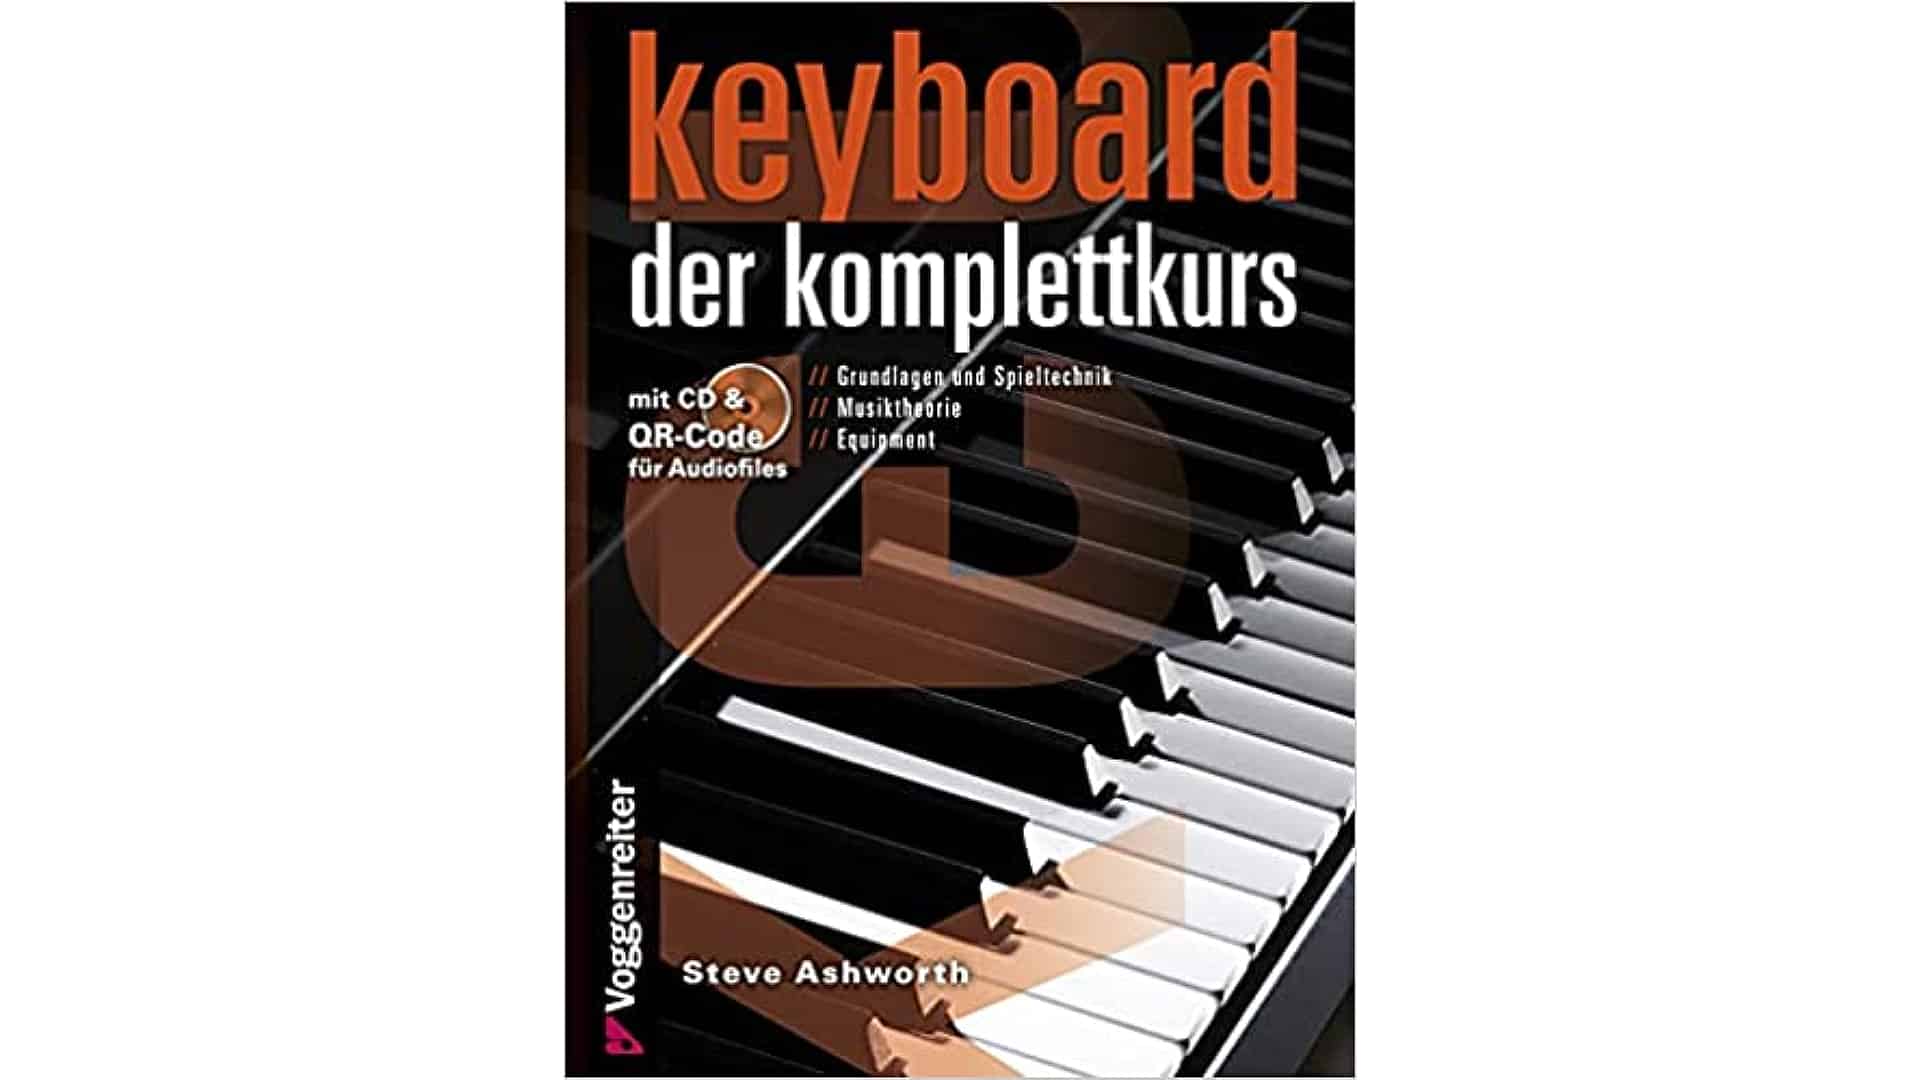 Keyboard lernen - der komplettkurs